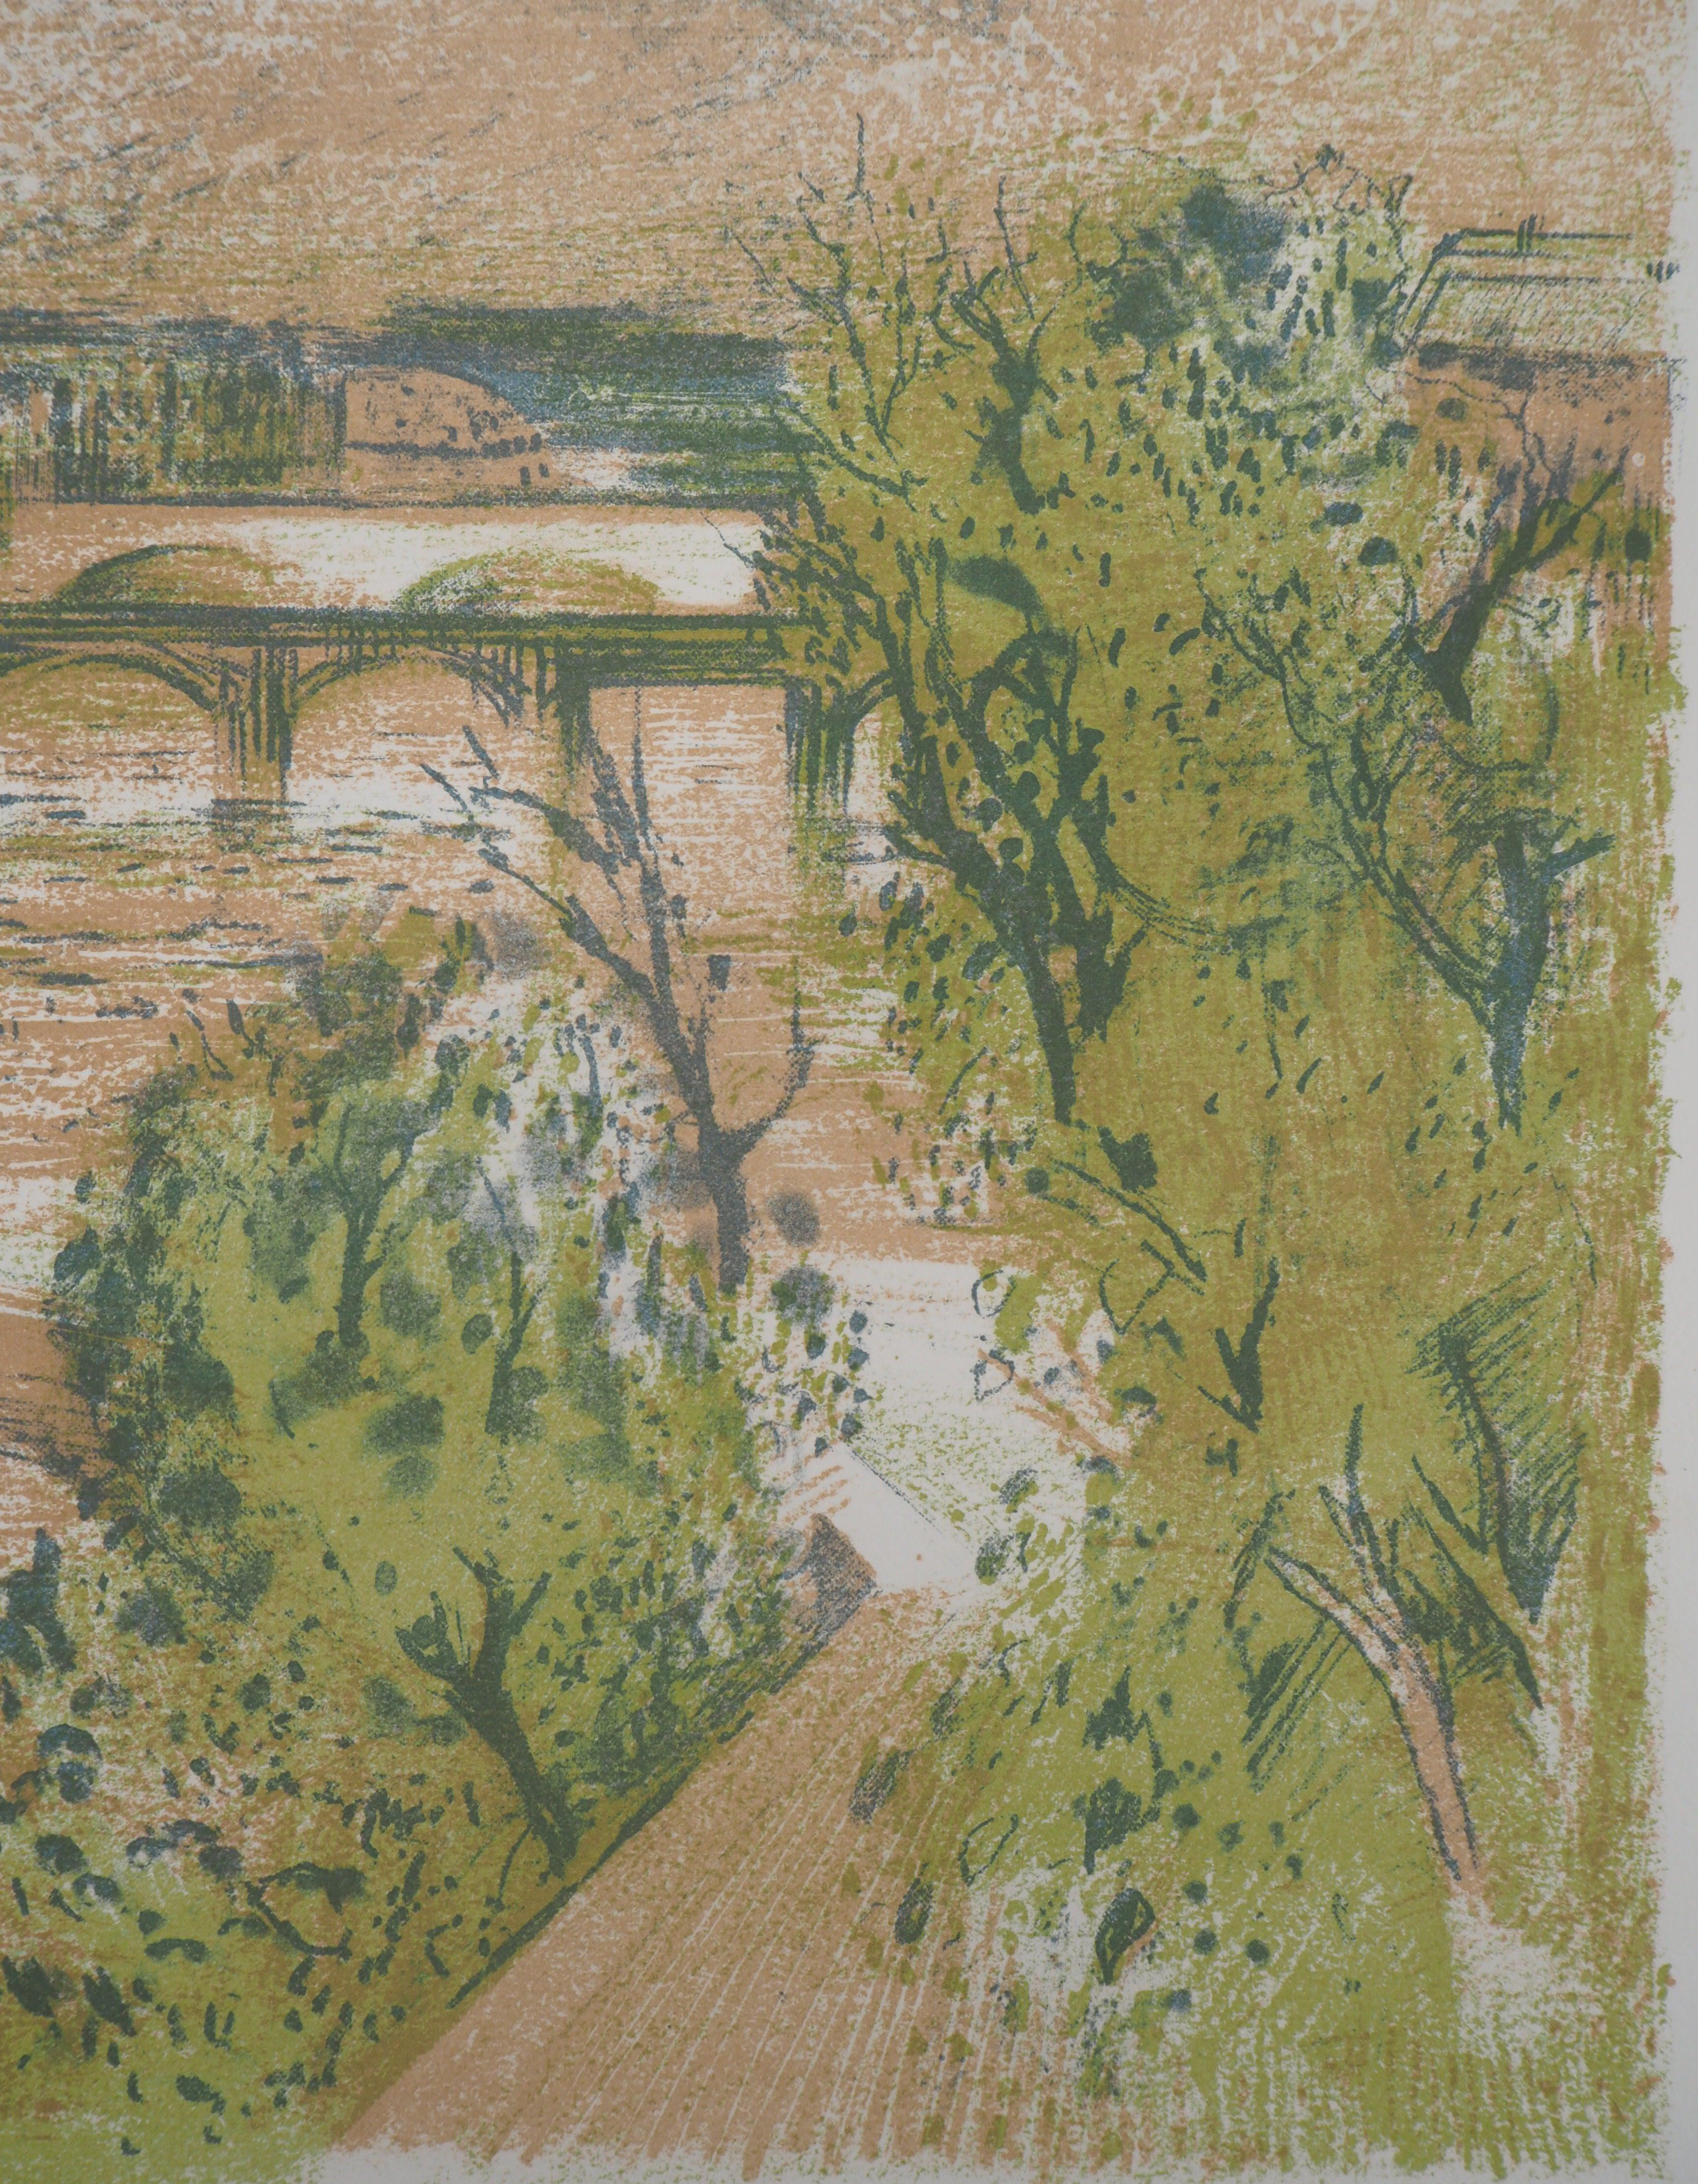 Paris : Seine River - Original lithograph, Handsigned - Brown Landscape Print by Paul Collomb